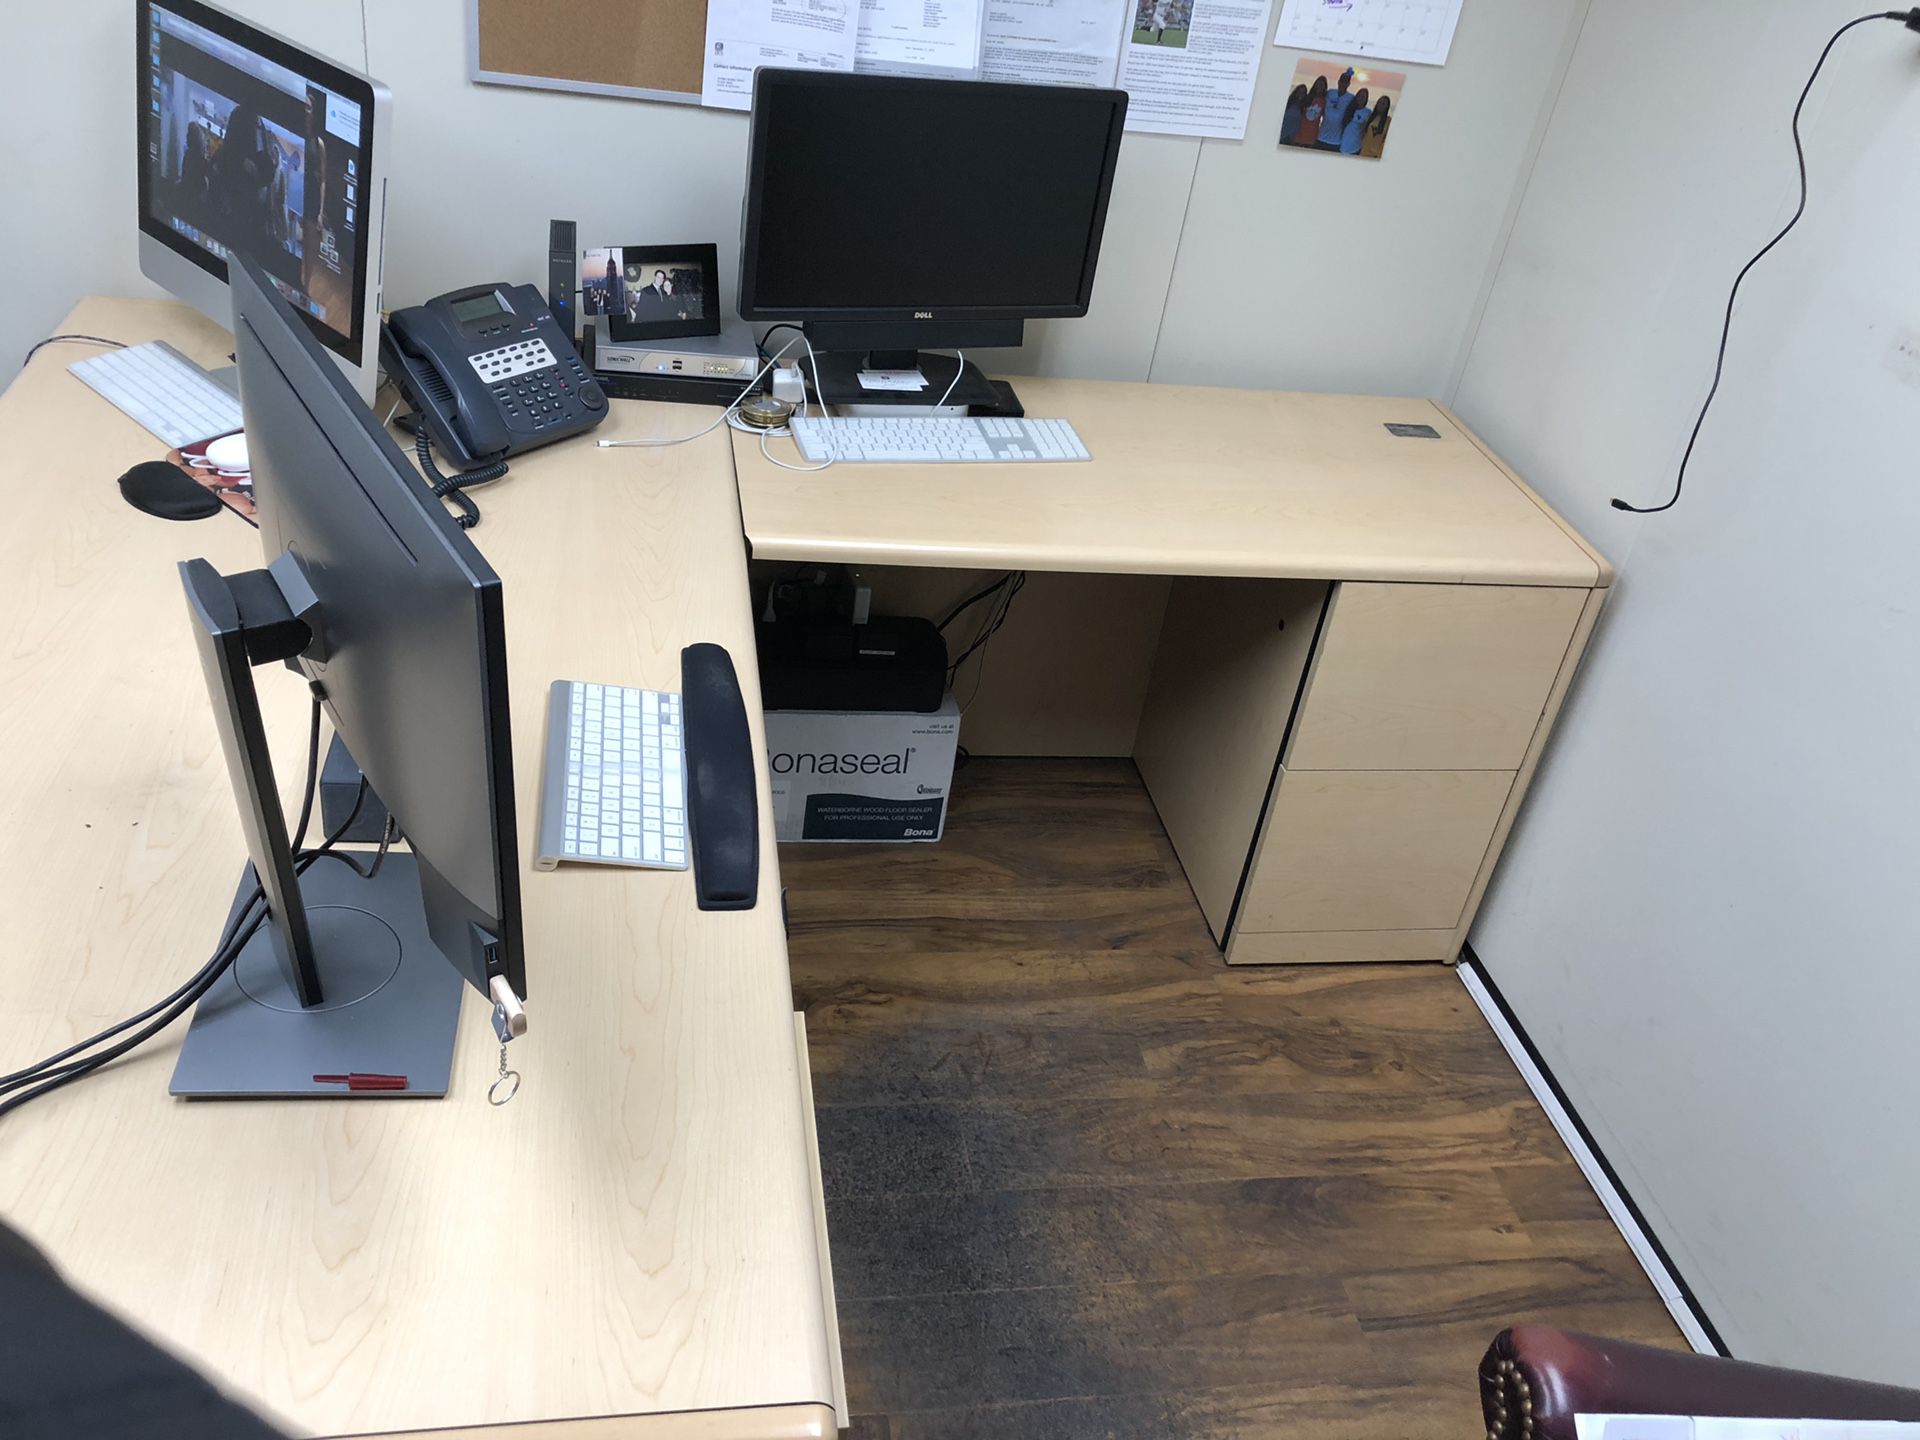 Office desk